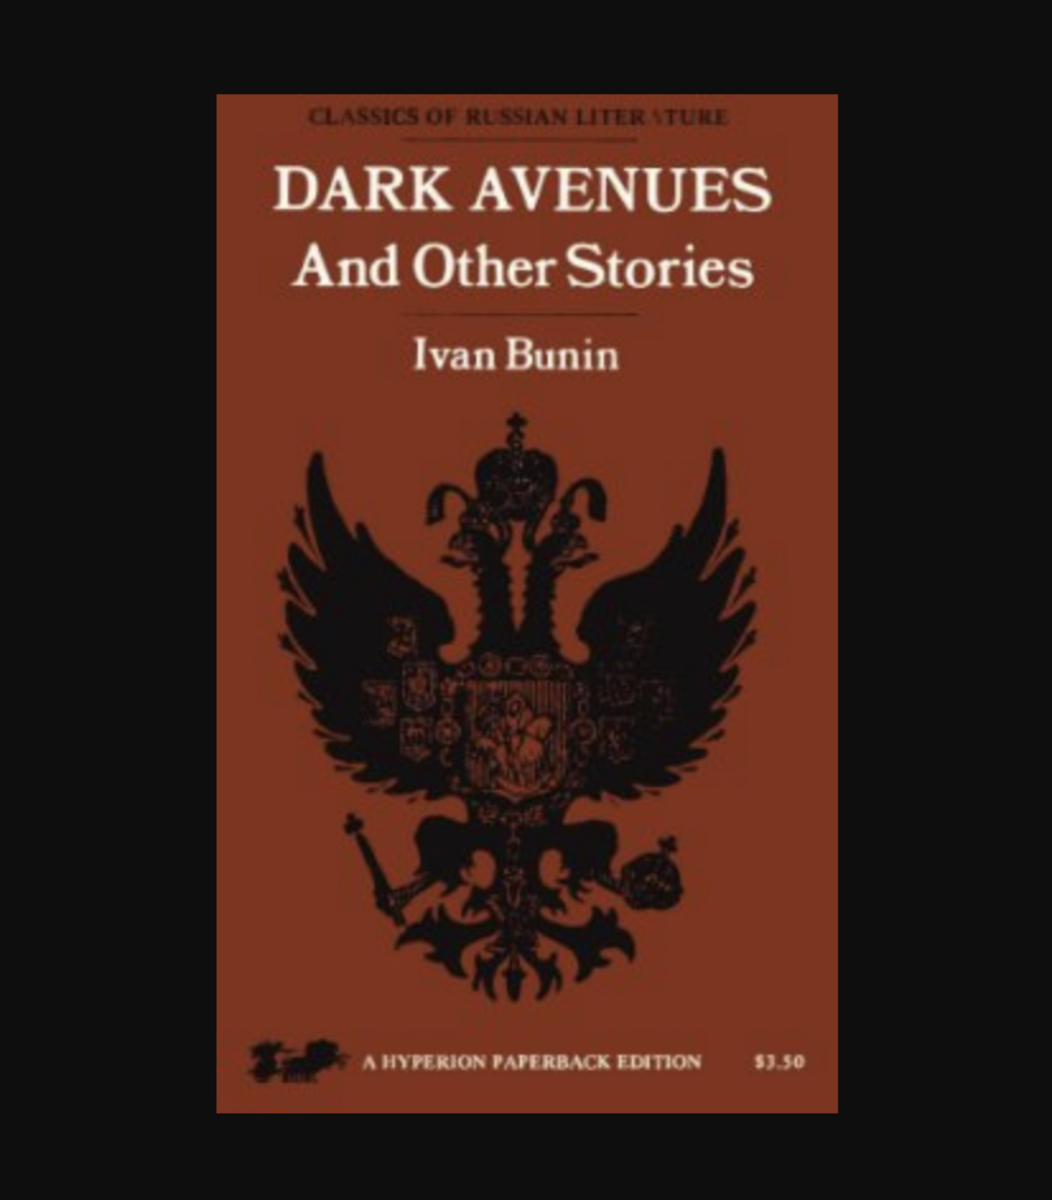 Dark Avenues